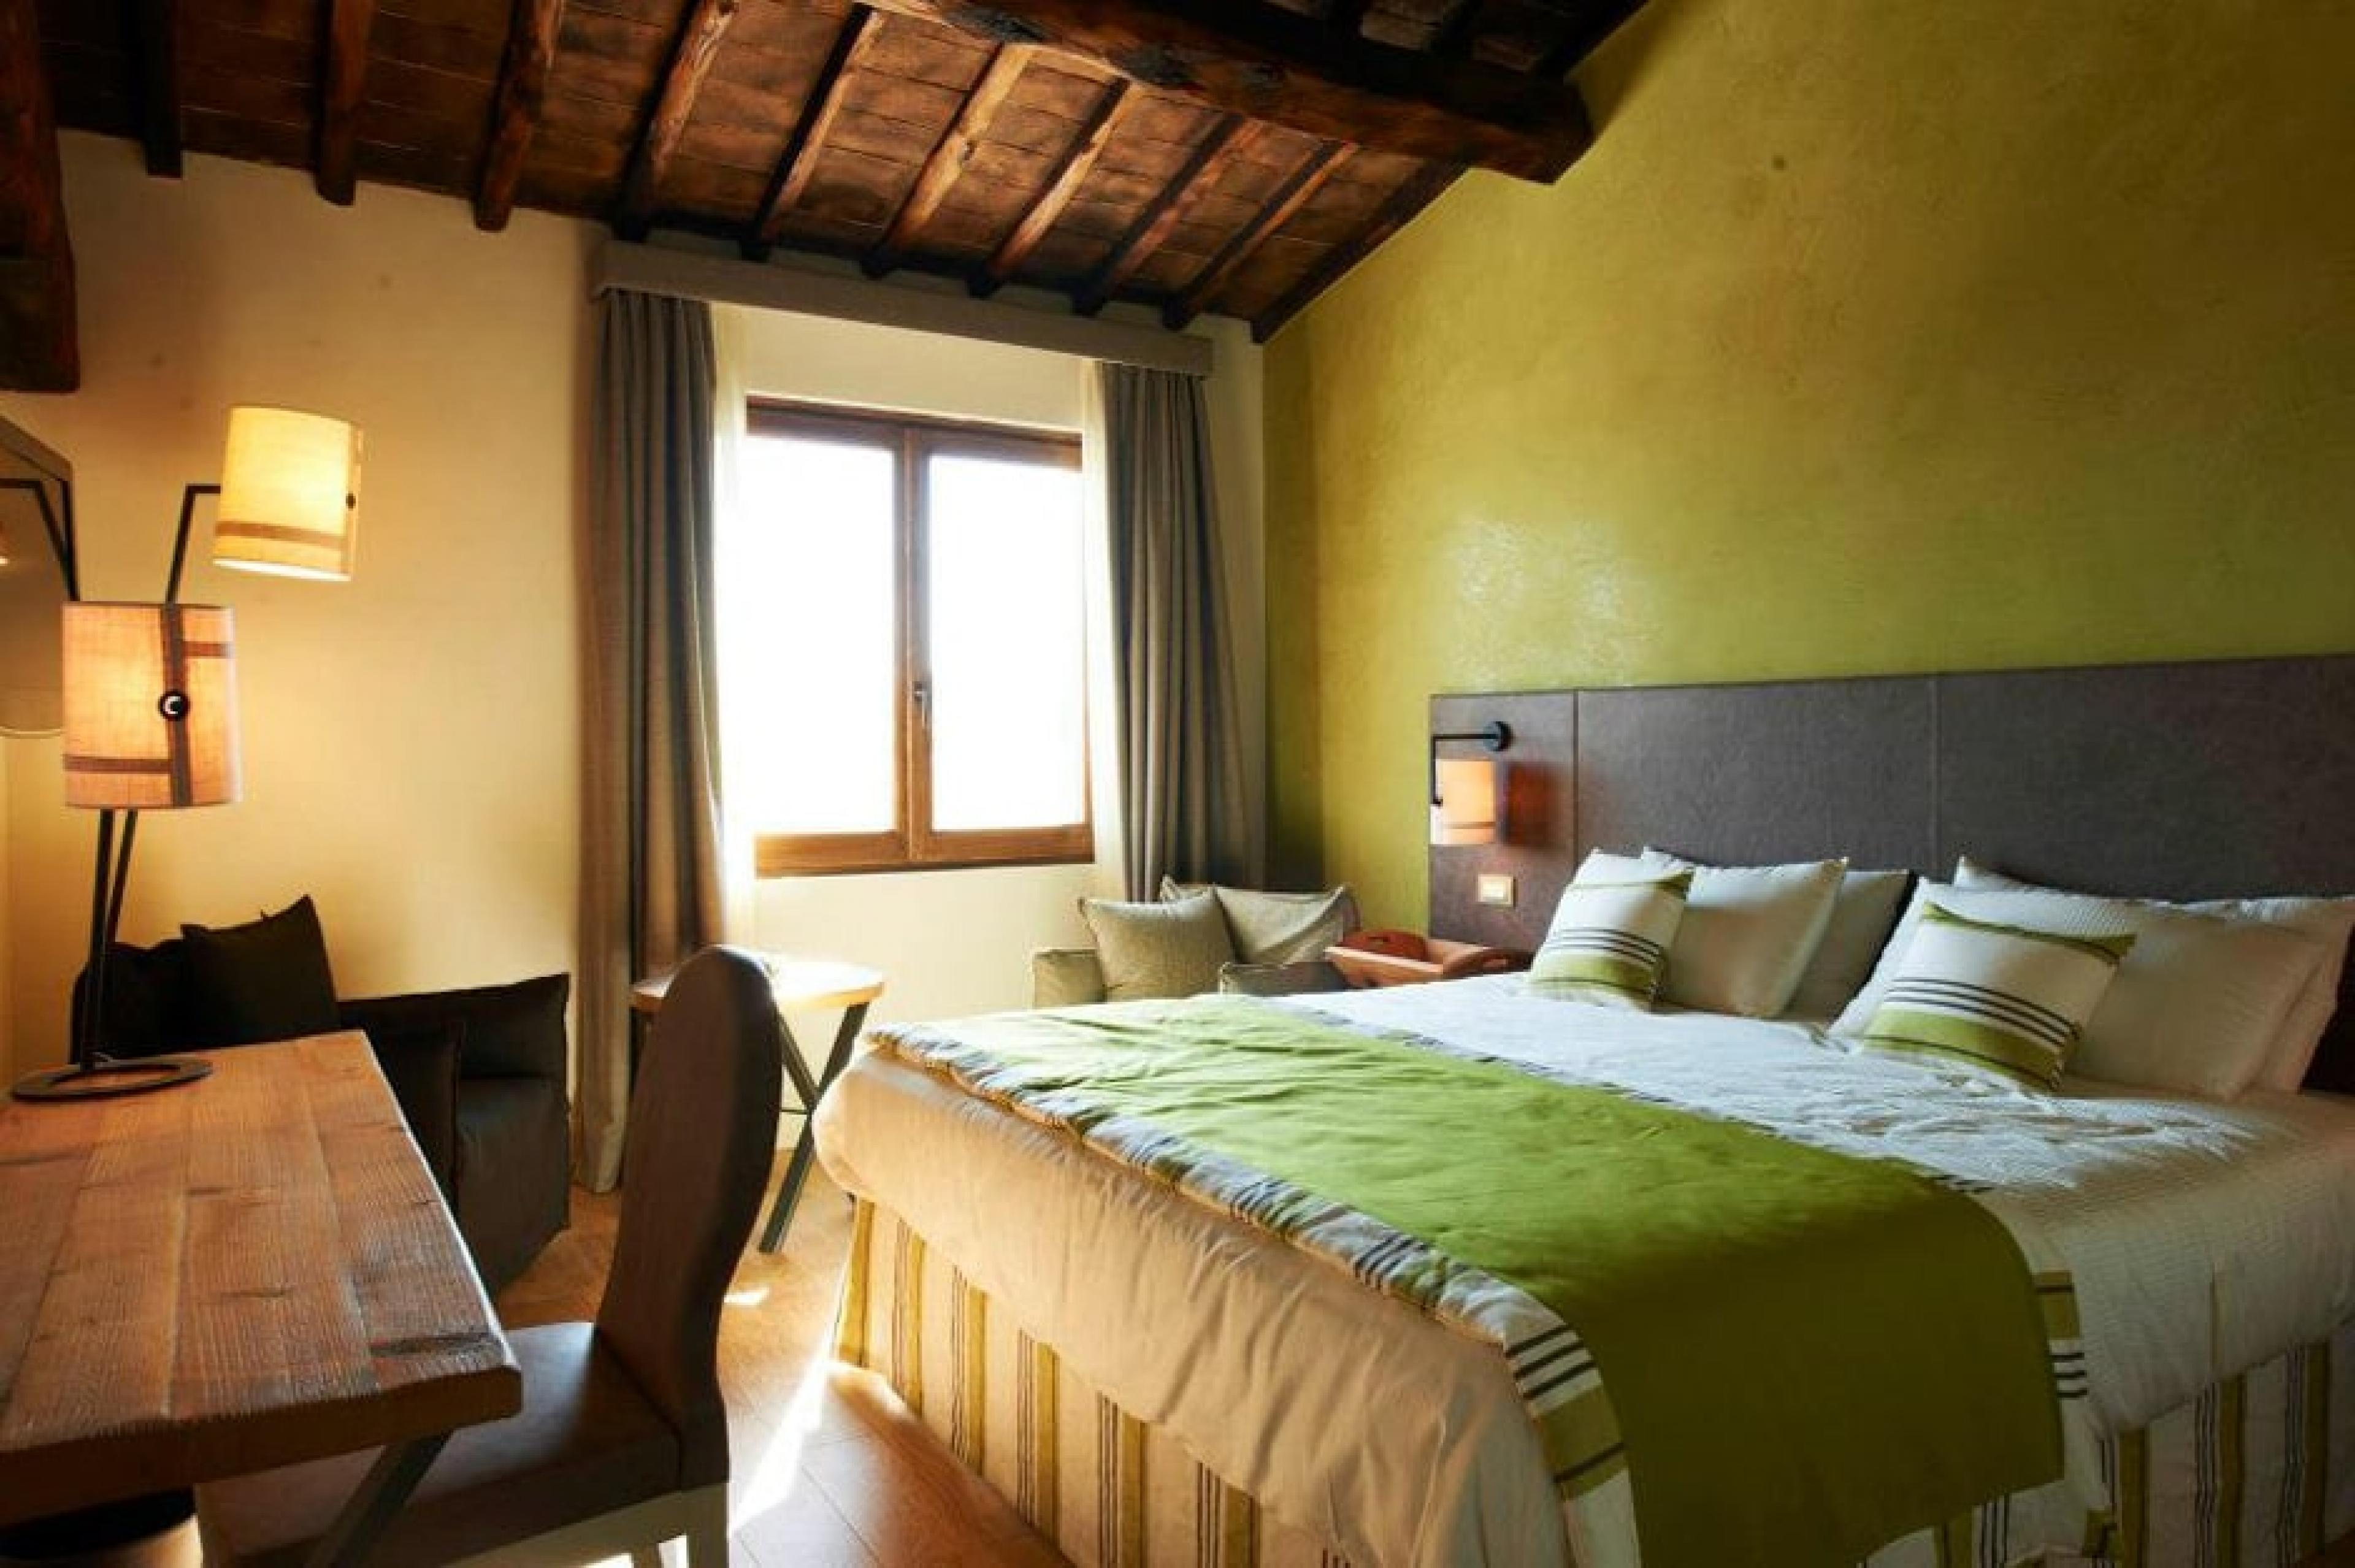 Bedroom at Toscana Resort Castelfalfi, Tuscany, Italy